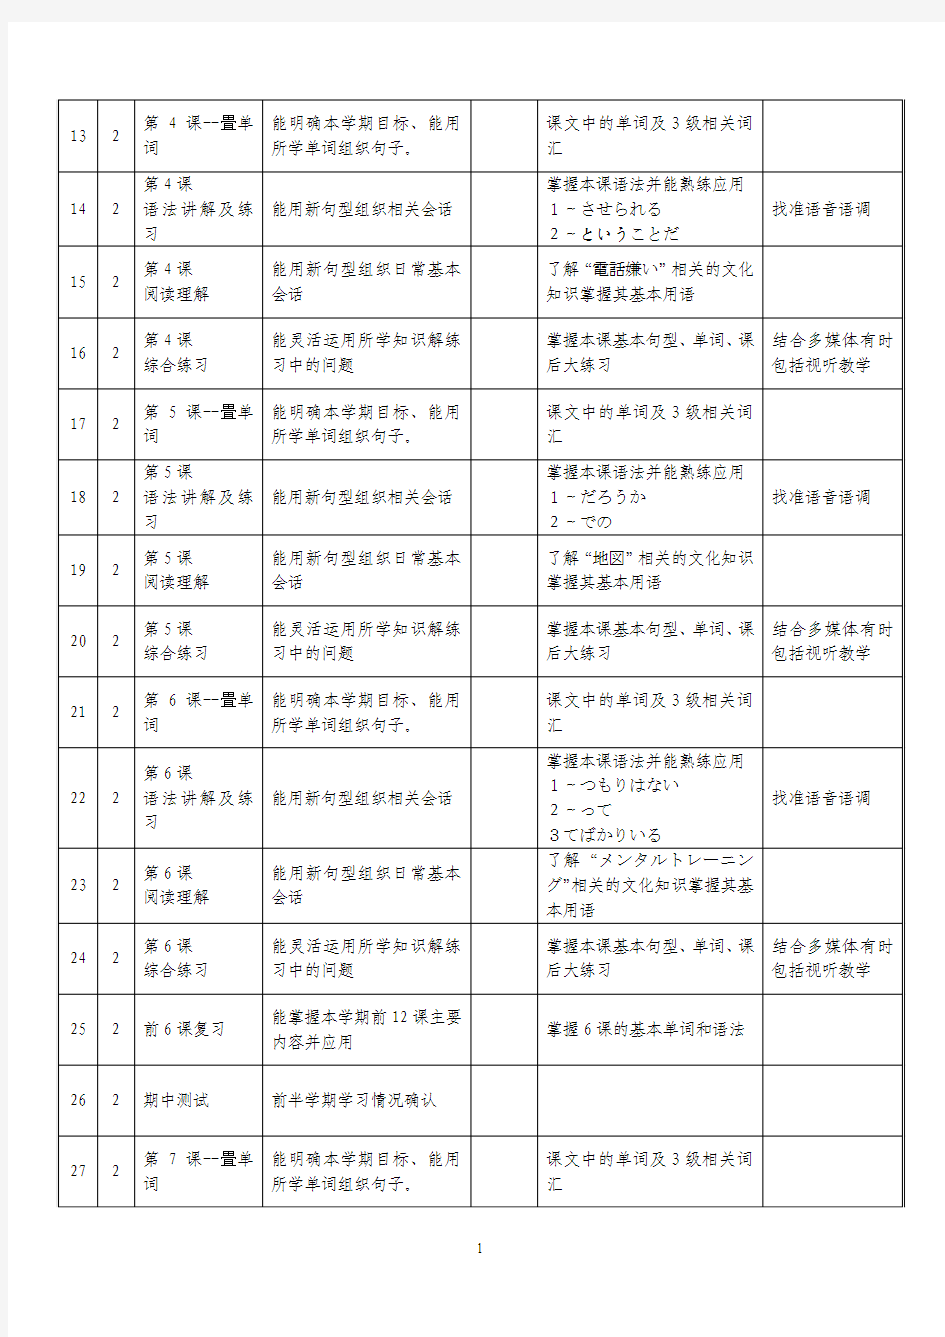 综合日语教学日历